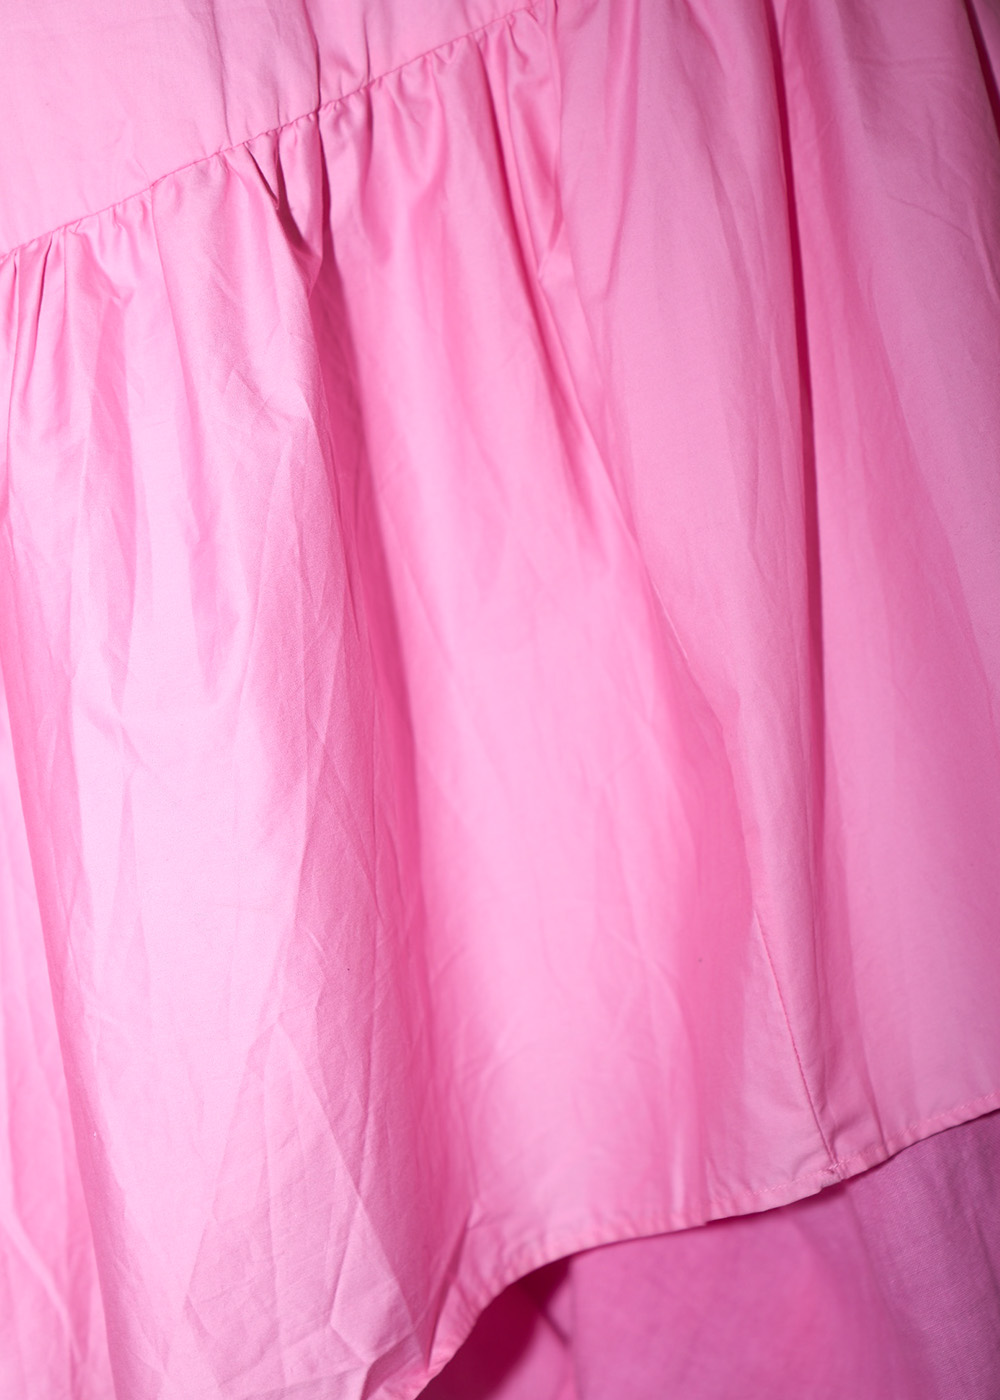 Rosa secondhandklänning inzoomad på böljande rosa tyg. Gå till sommarklänningar.